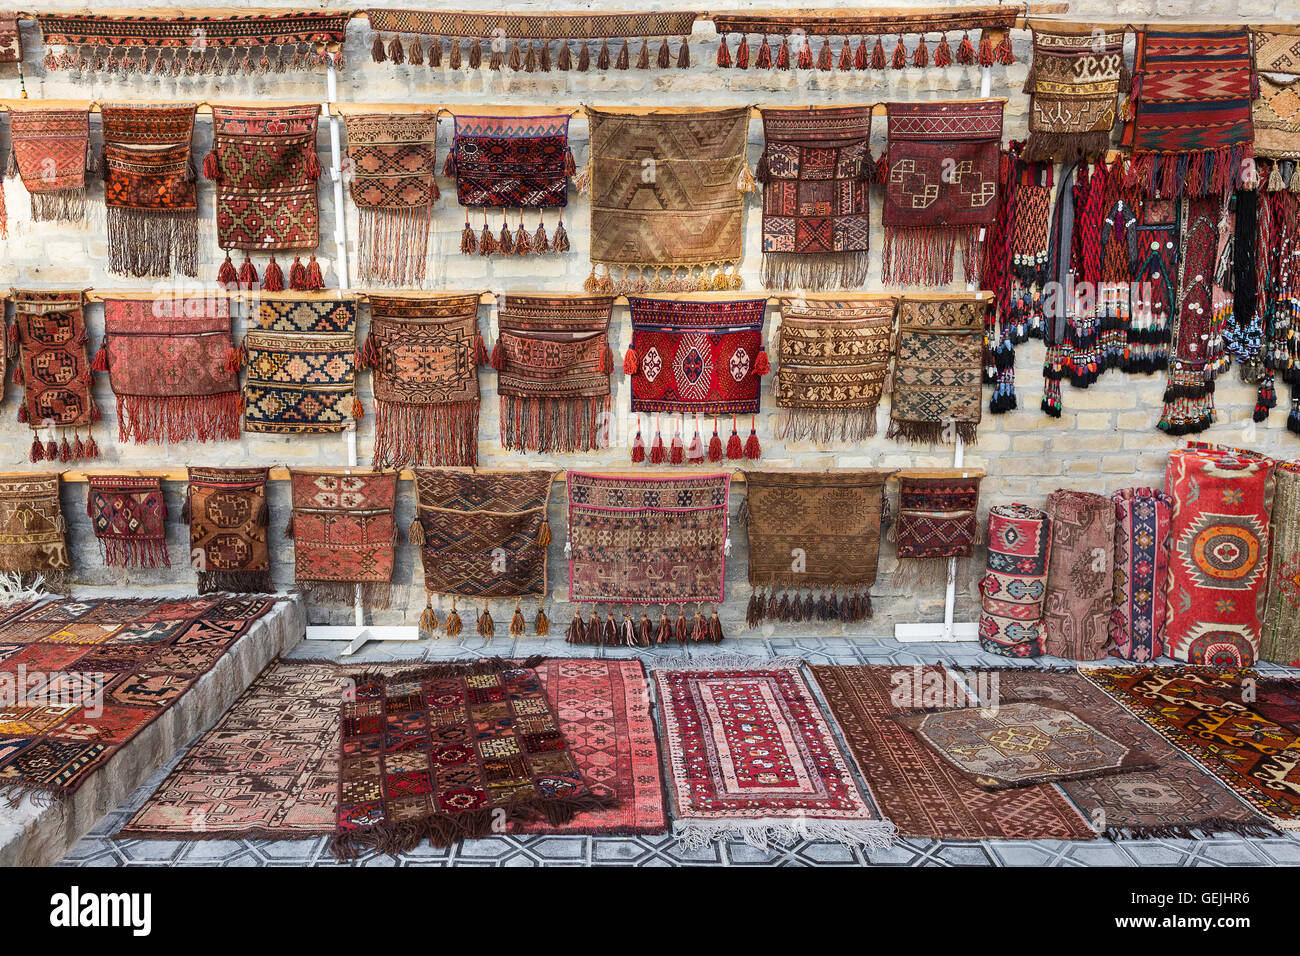 Coloridas alfombras orientales fuera de una tienda en Bujará, Uzbekistán. Foto de stock